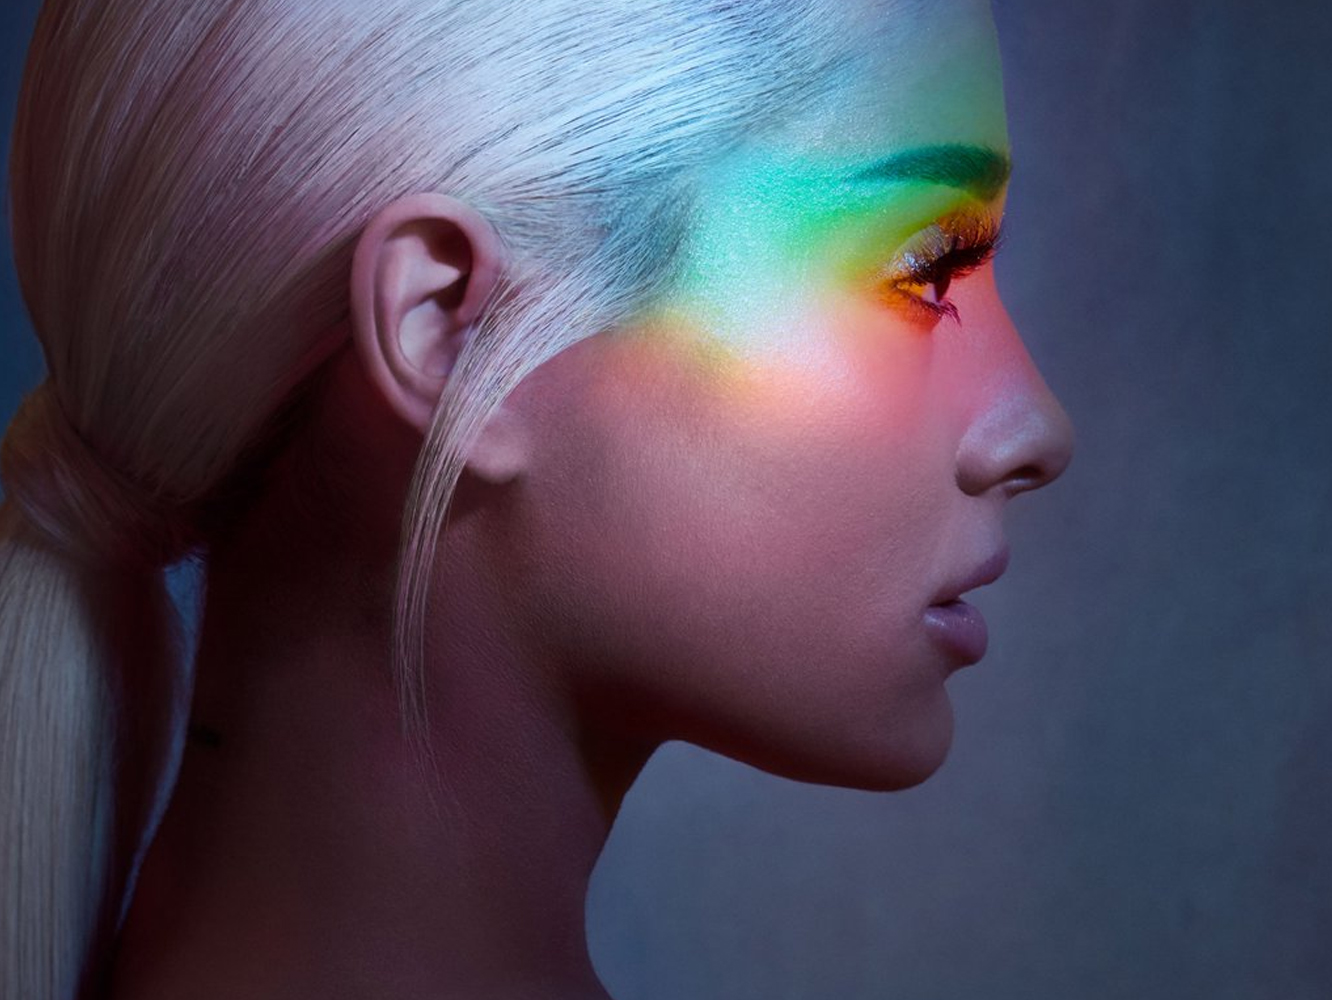  Adelanto de ‘No Tears Left To Cry’, el nuevo single de Ariana Grande